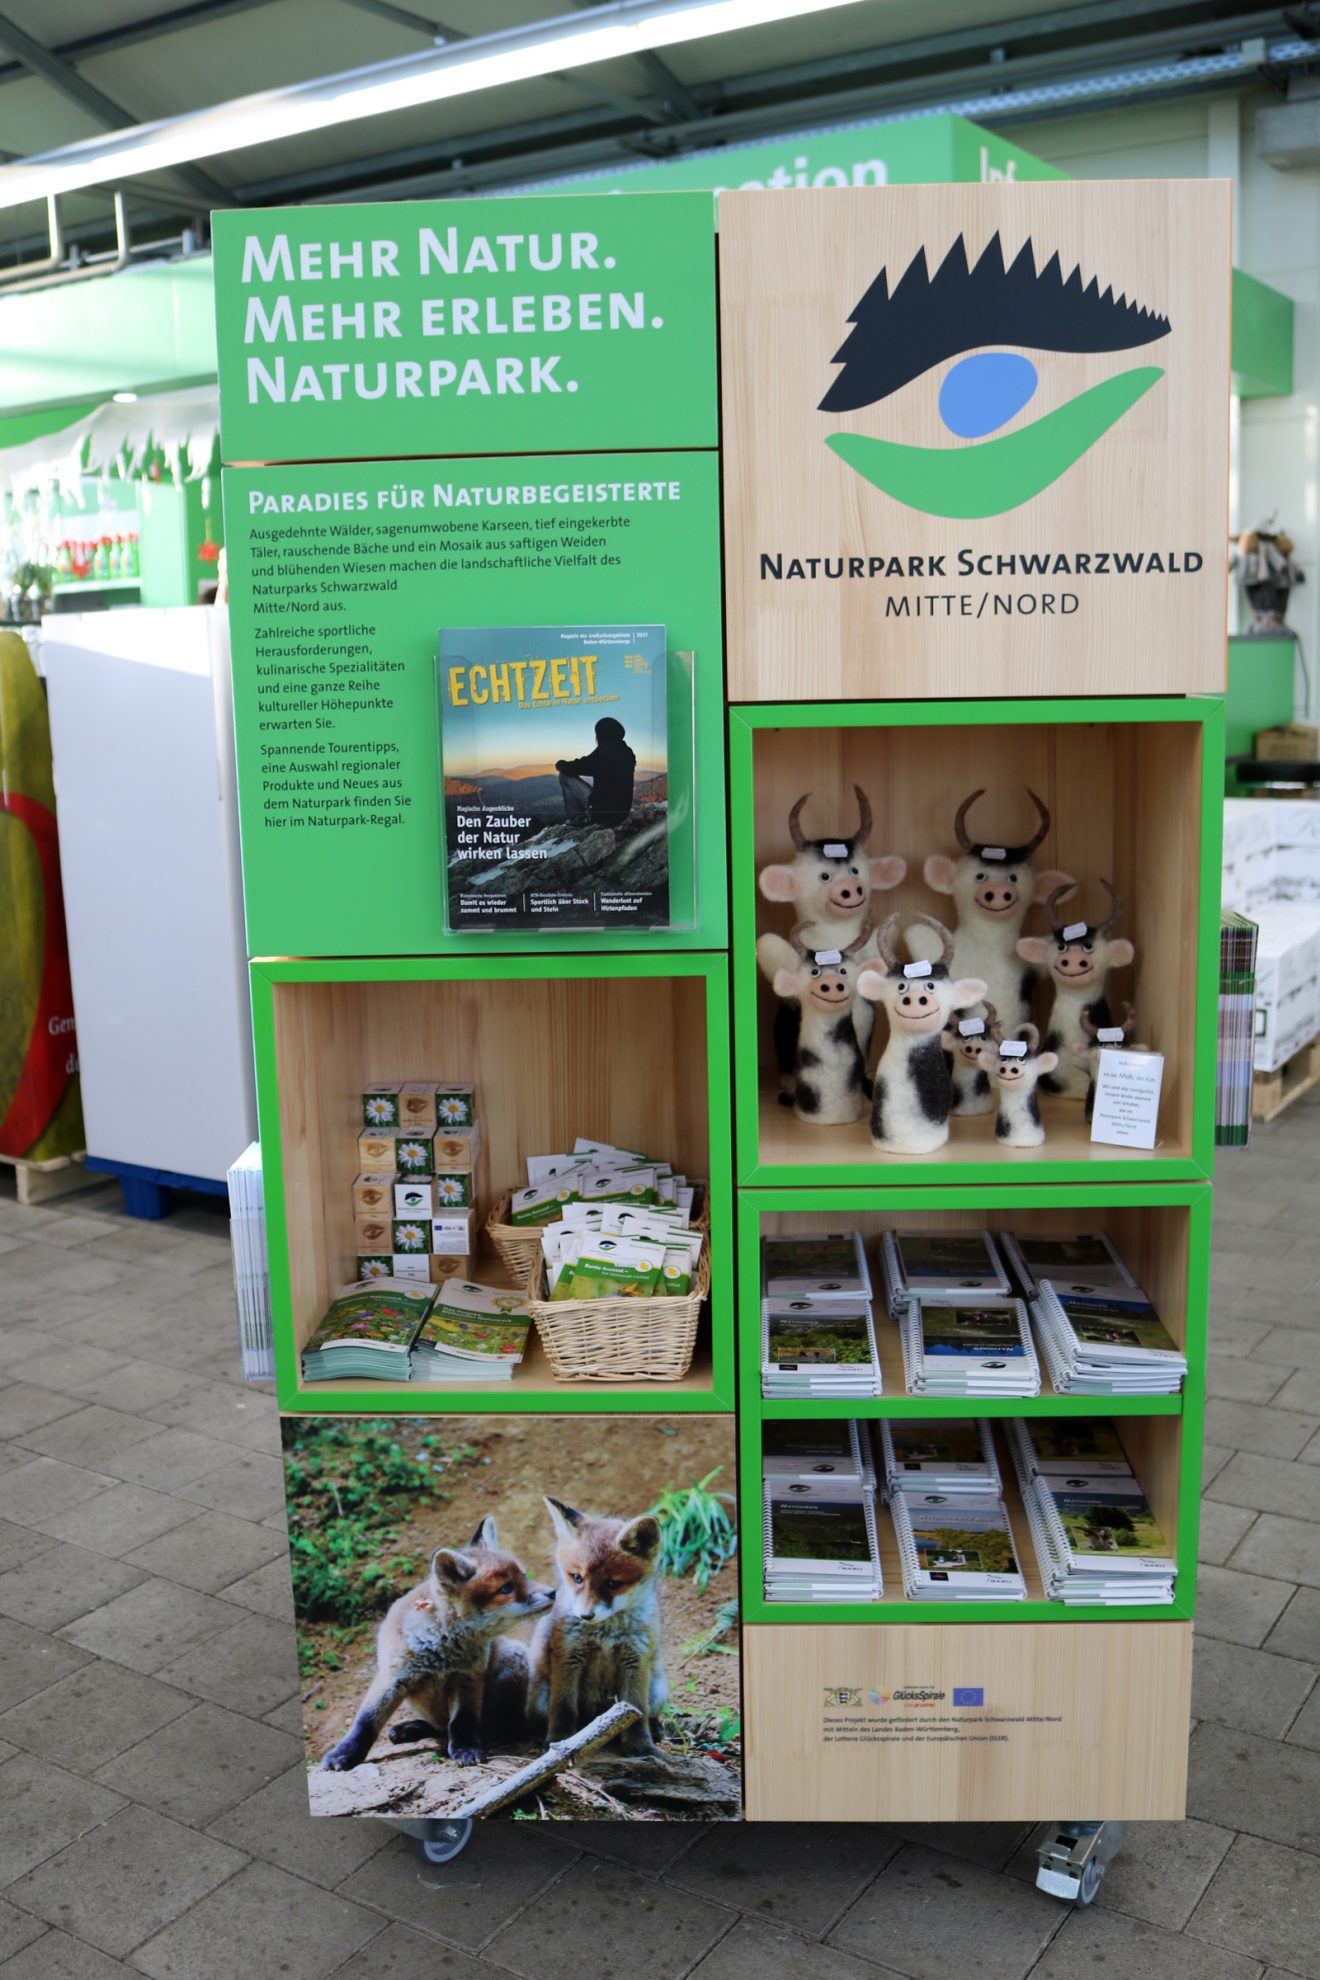 Naturpark-Würfel in vier Raiffeisen Märkten in der Region Schwarzwald Mitte/Nord